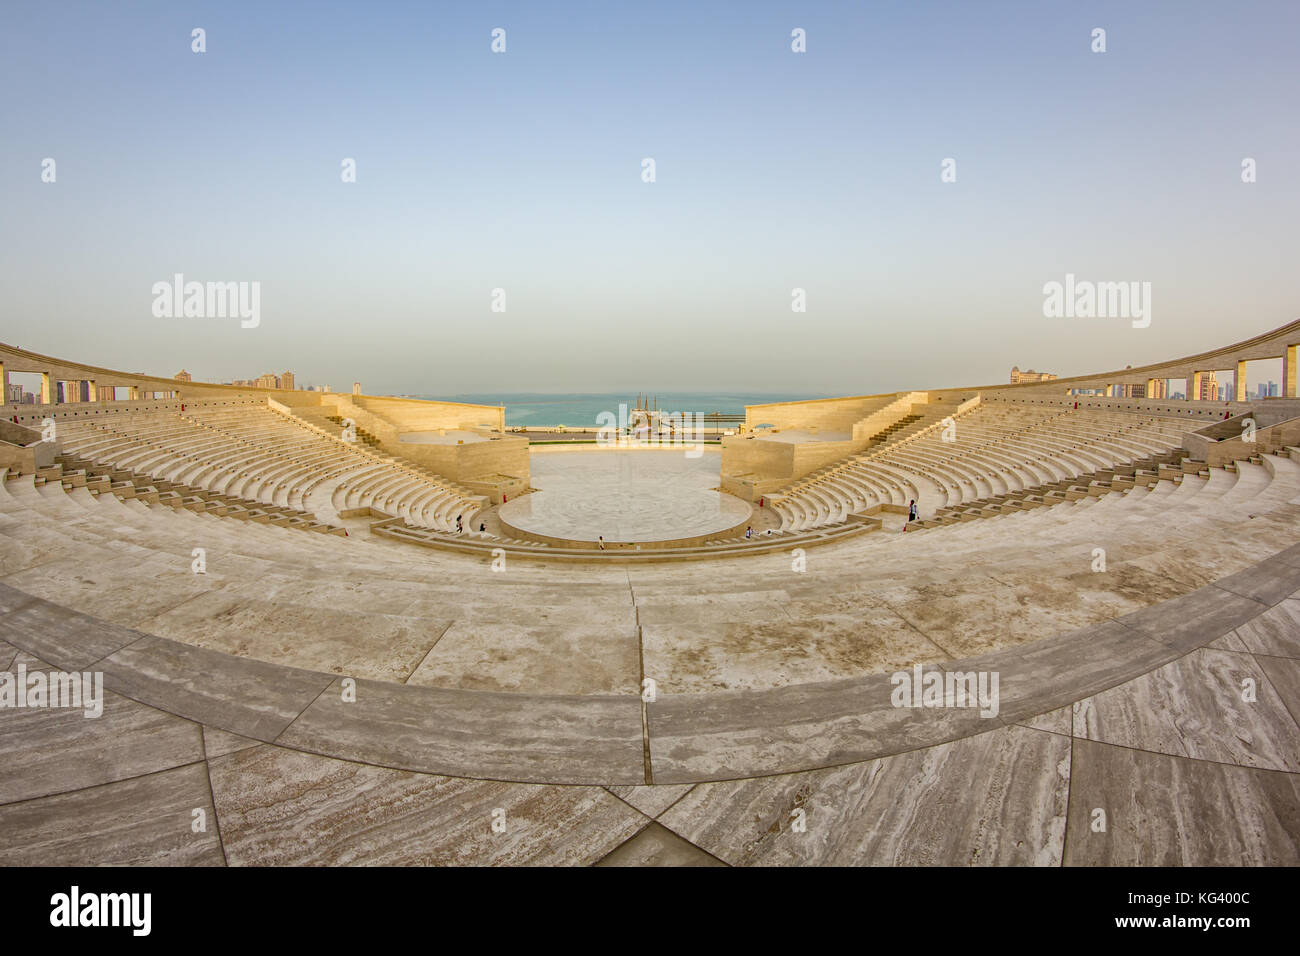 L'anfiteatro romano di Katara villaggio culturale a Doha in Qatar vista panoramica in condizioni di luce diurna con golfo arabo in background Foto Stock